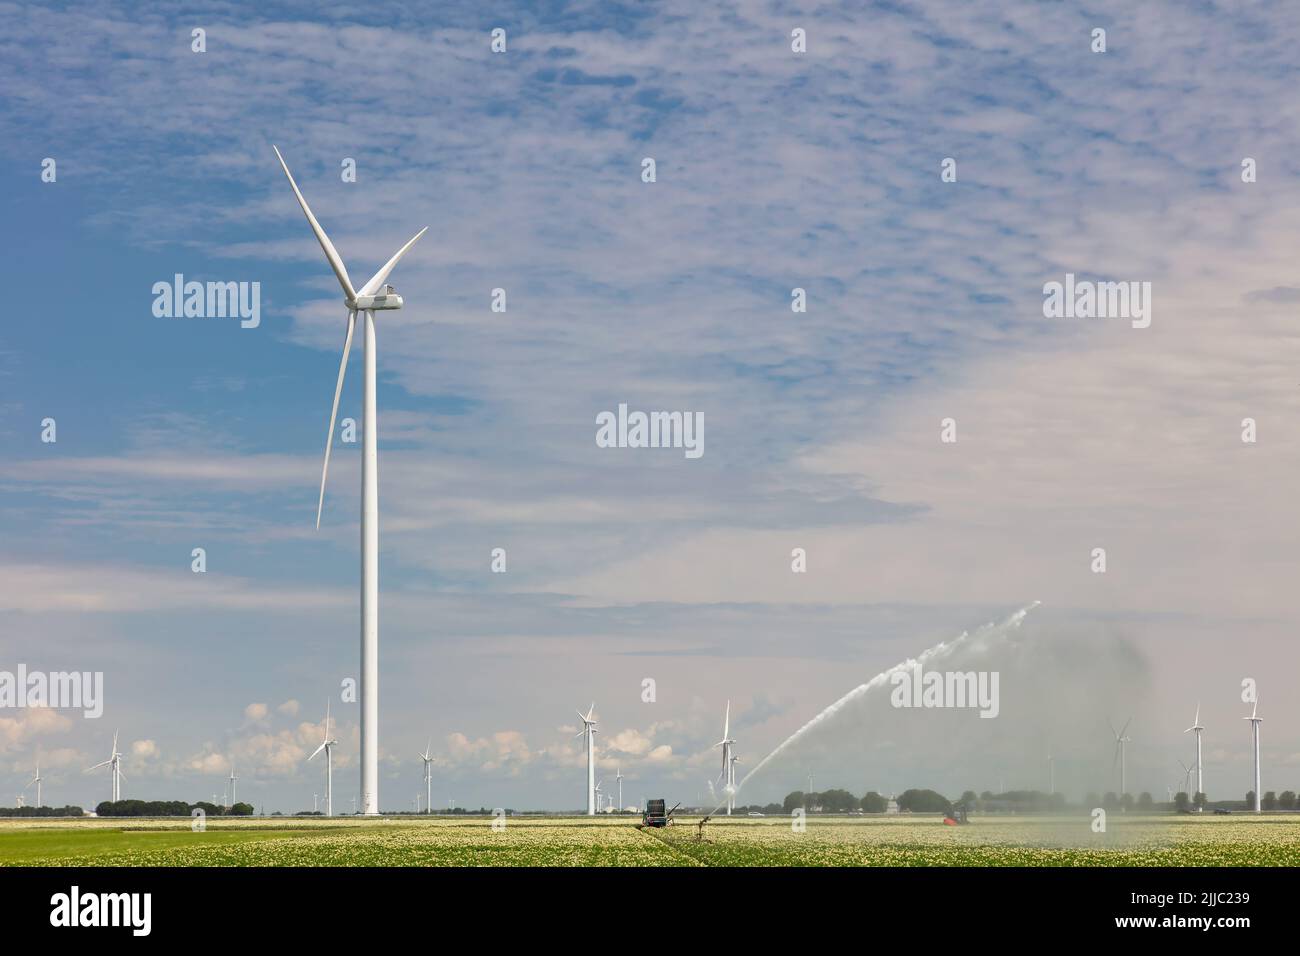 Rociadores de riego en las tierras de labranza frente a un parque eólico con turbinas eólicas en Flevoland, Países Bajos Foto de stock